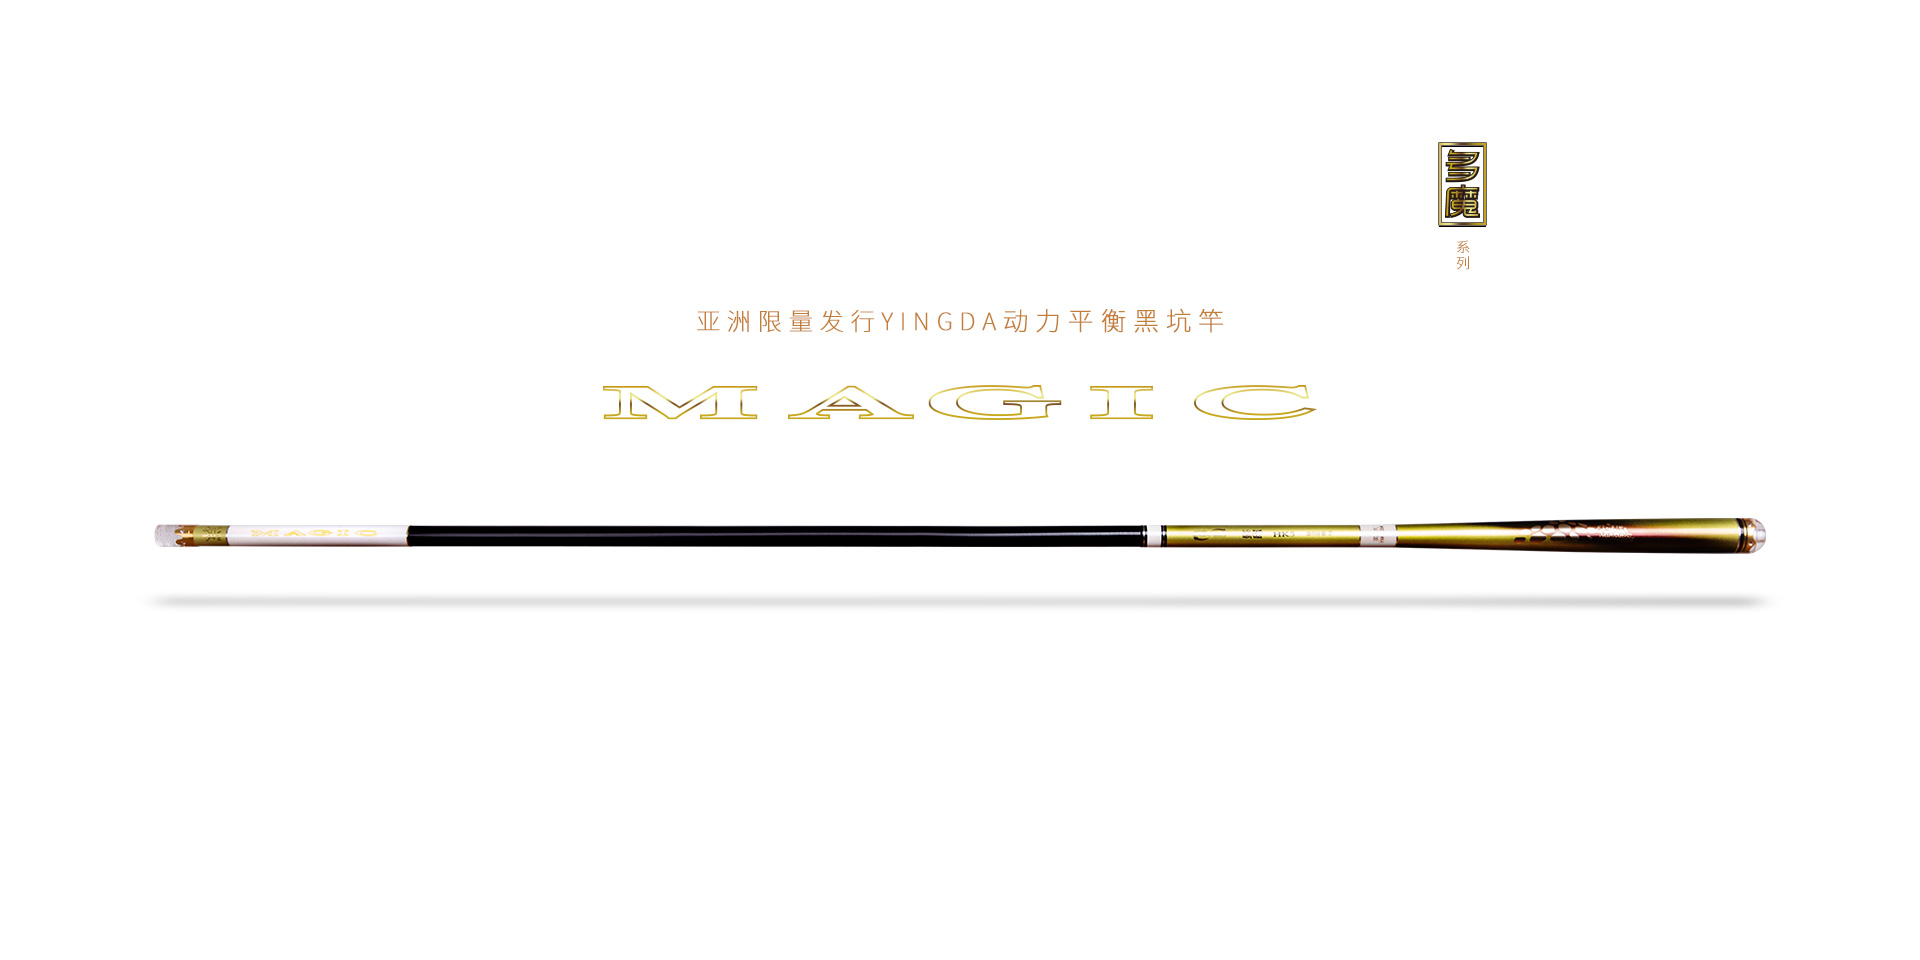 英大钓具亚洲限量发行YINGDA・MAGIC・动力平衡黑坑系列新品――多魔・HK5，品质型动力平衡黑坑竿。